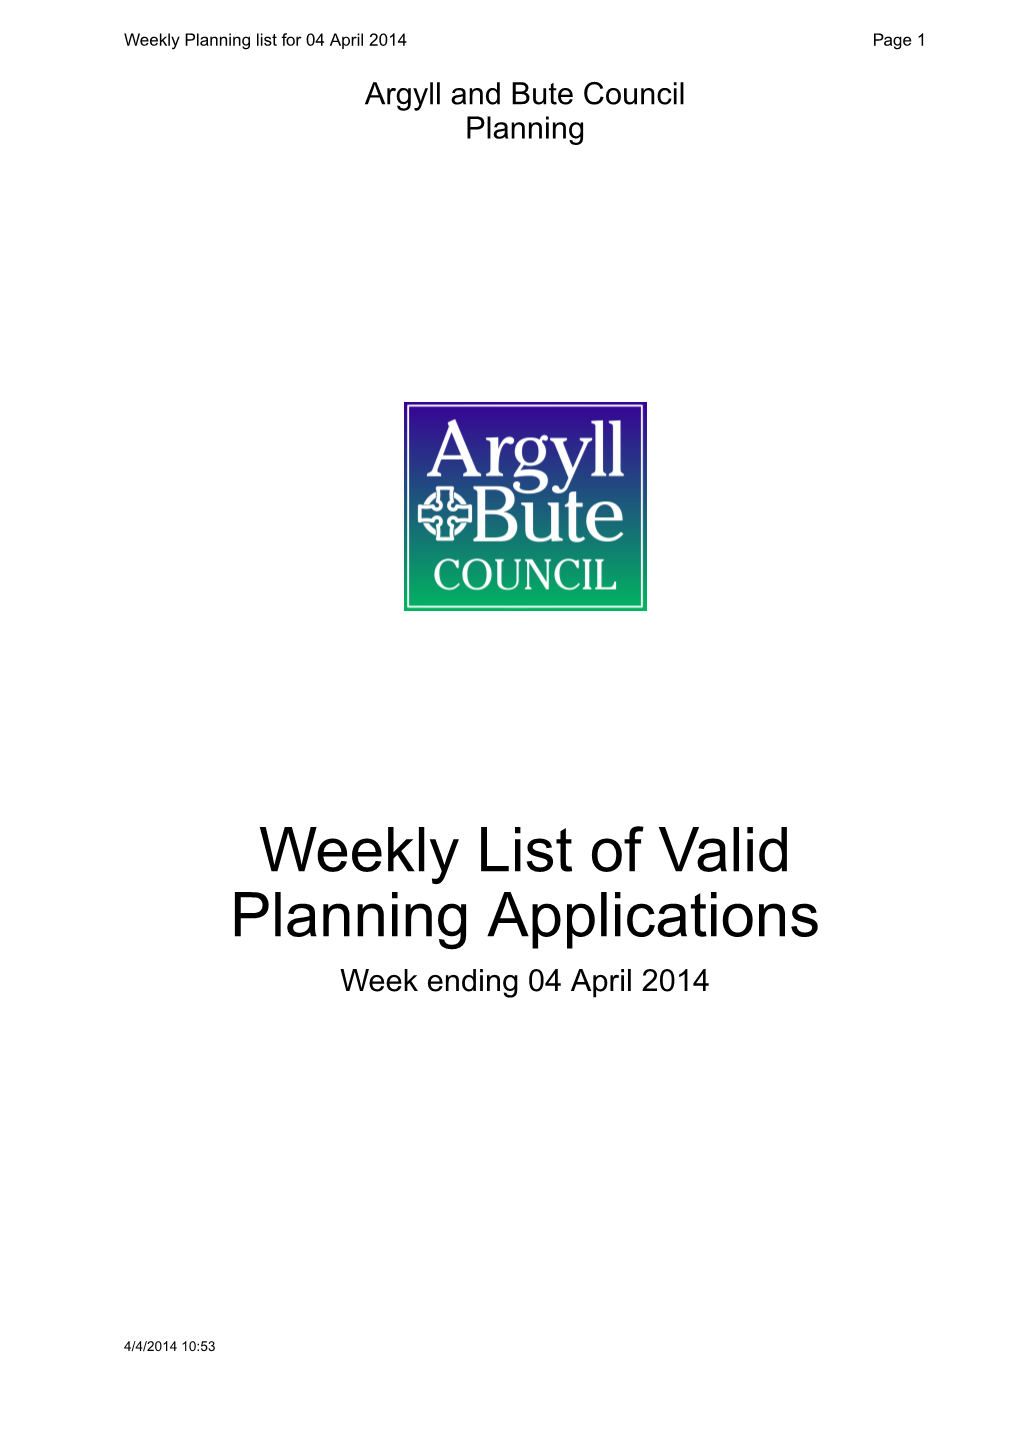 Weekly List of Valid Planning Applications Week Ending 04 April 2014